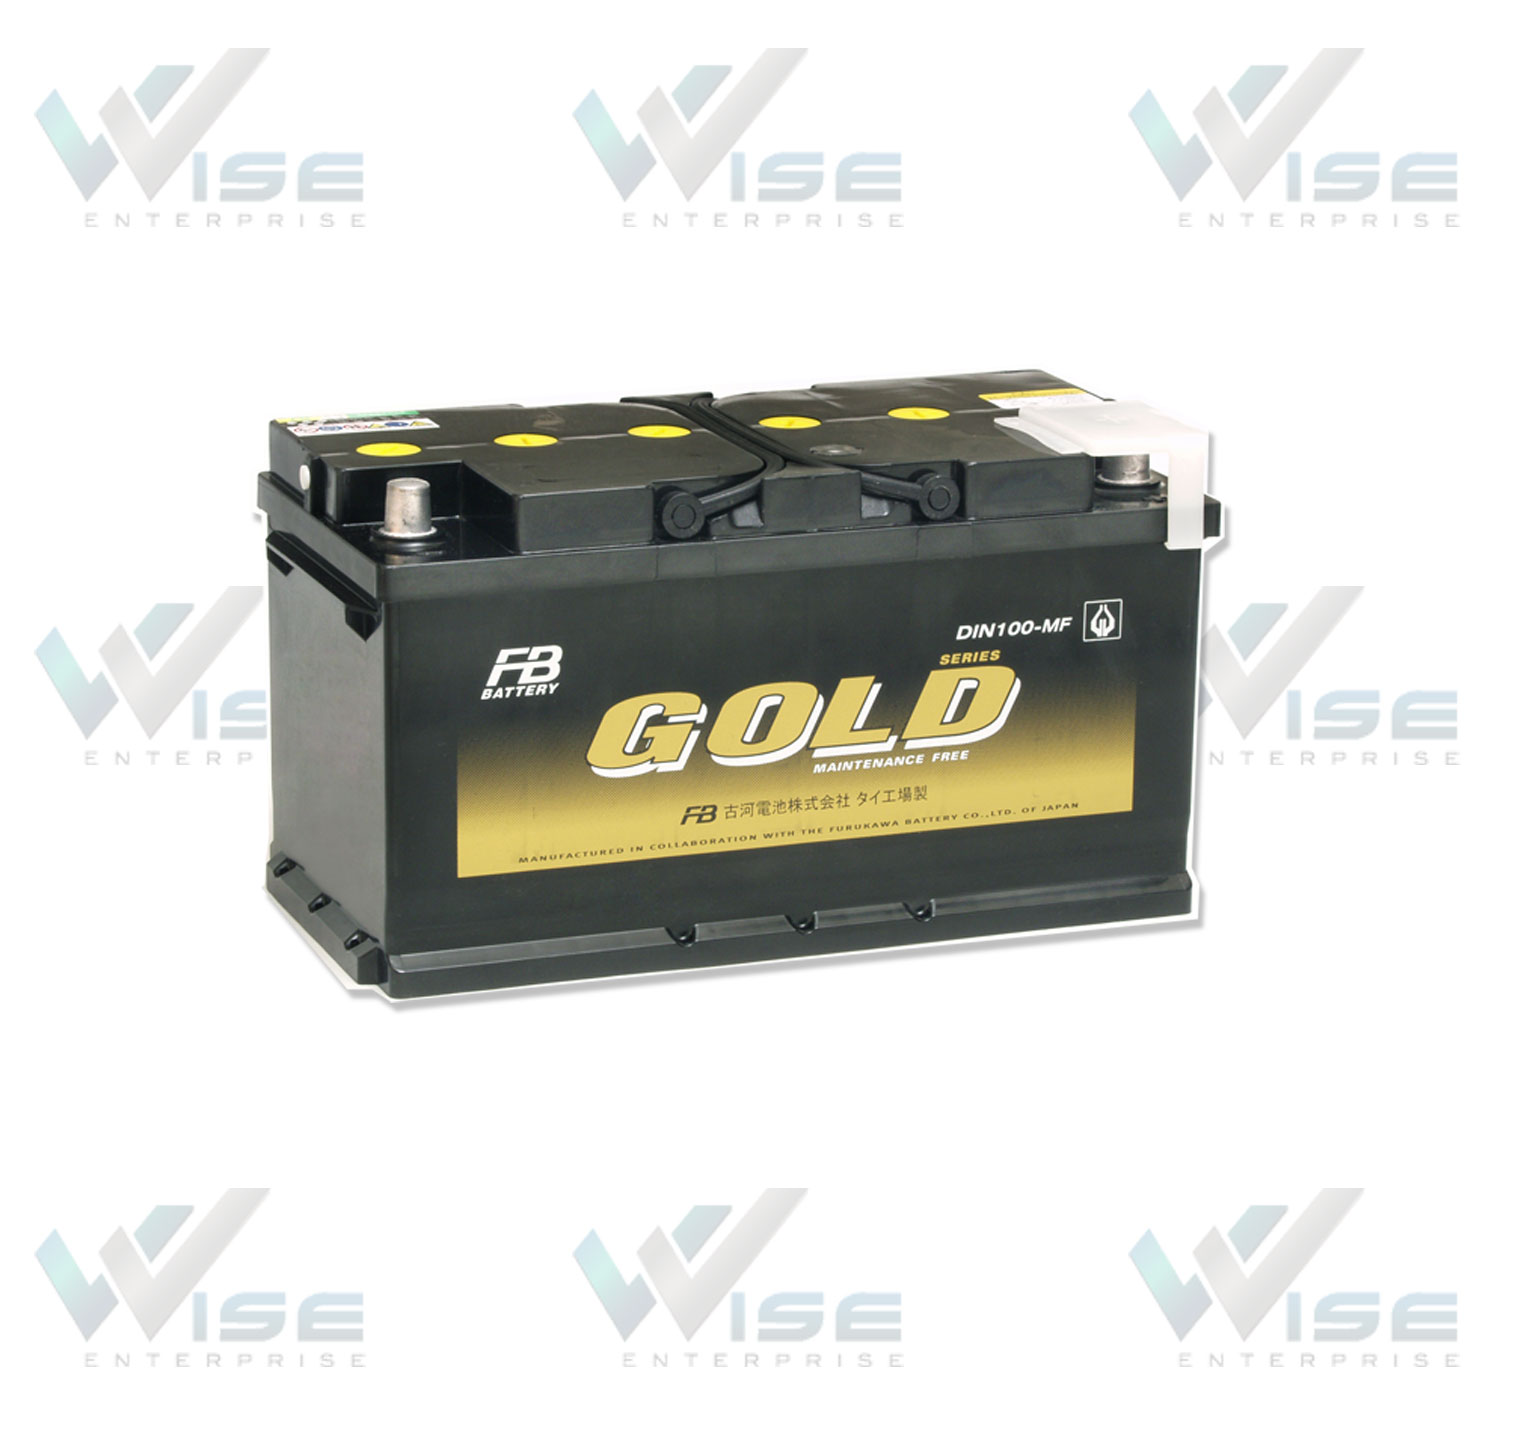 แบตเตอรี่รถยนต์ Automotive Batteries แบตเตอรี่ไม่ต้องเติมน้ำกลั่นบ่อย Gold Series แบตเตอรี่เอฟบี FB Battery